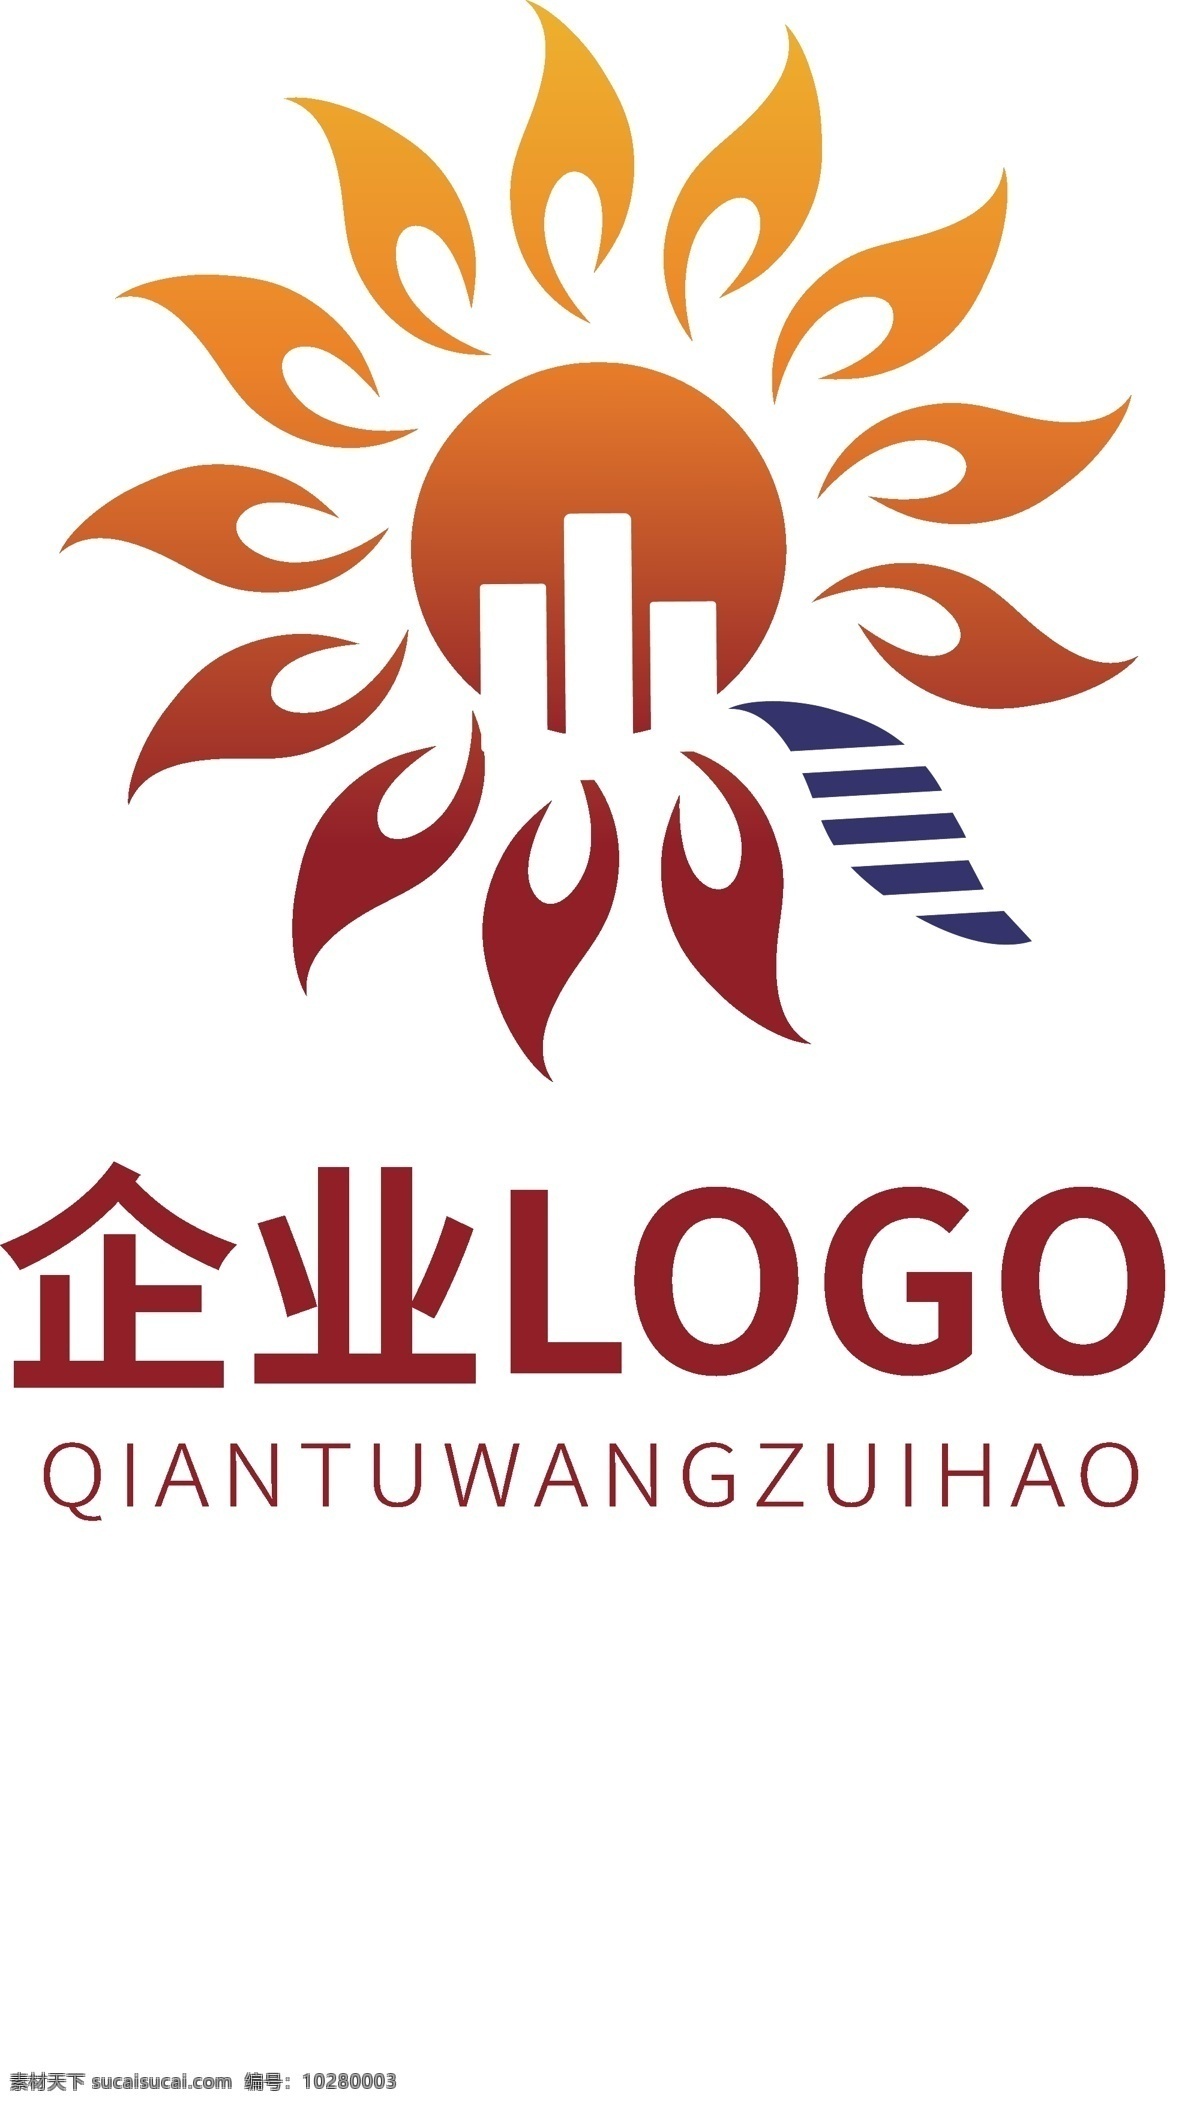 企业 高端 大气 logo 房地产 企业logo 个人logo 标志设计 太阳logo